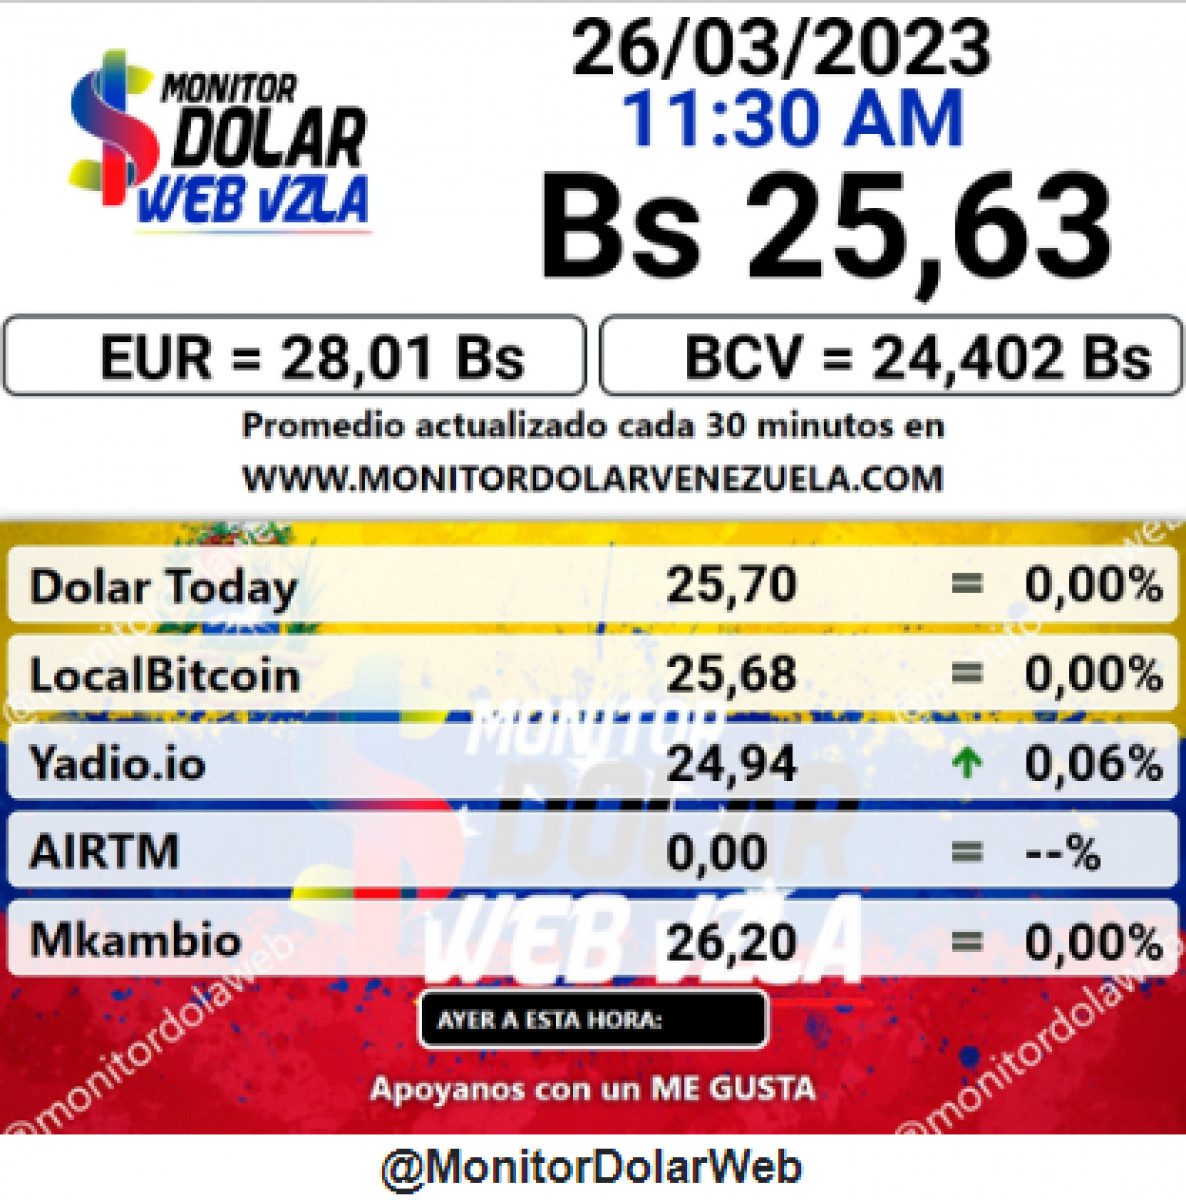 dolartoday en venezuela precio del dolar este domingo 26 de marzo de 2023 laverdaddemonagas.com monitor98e